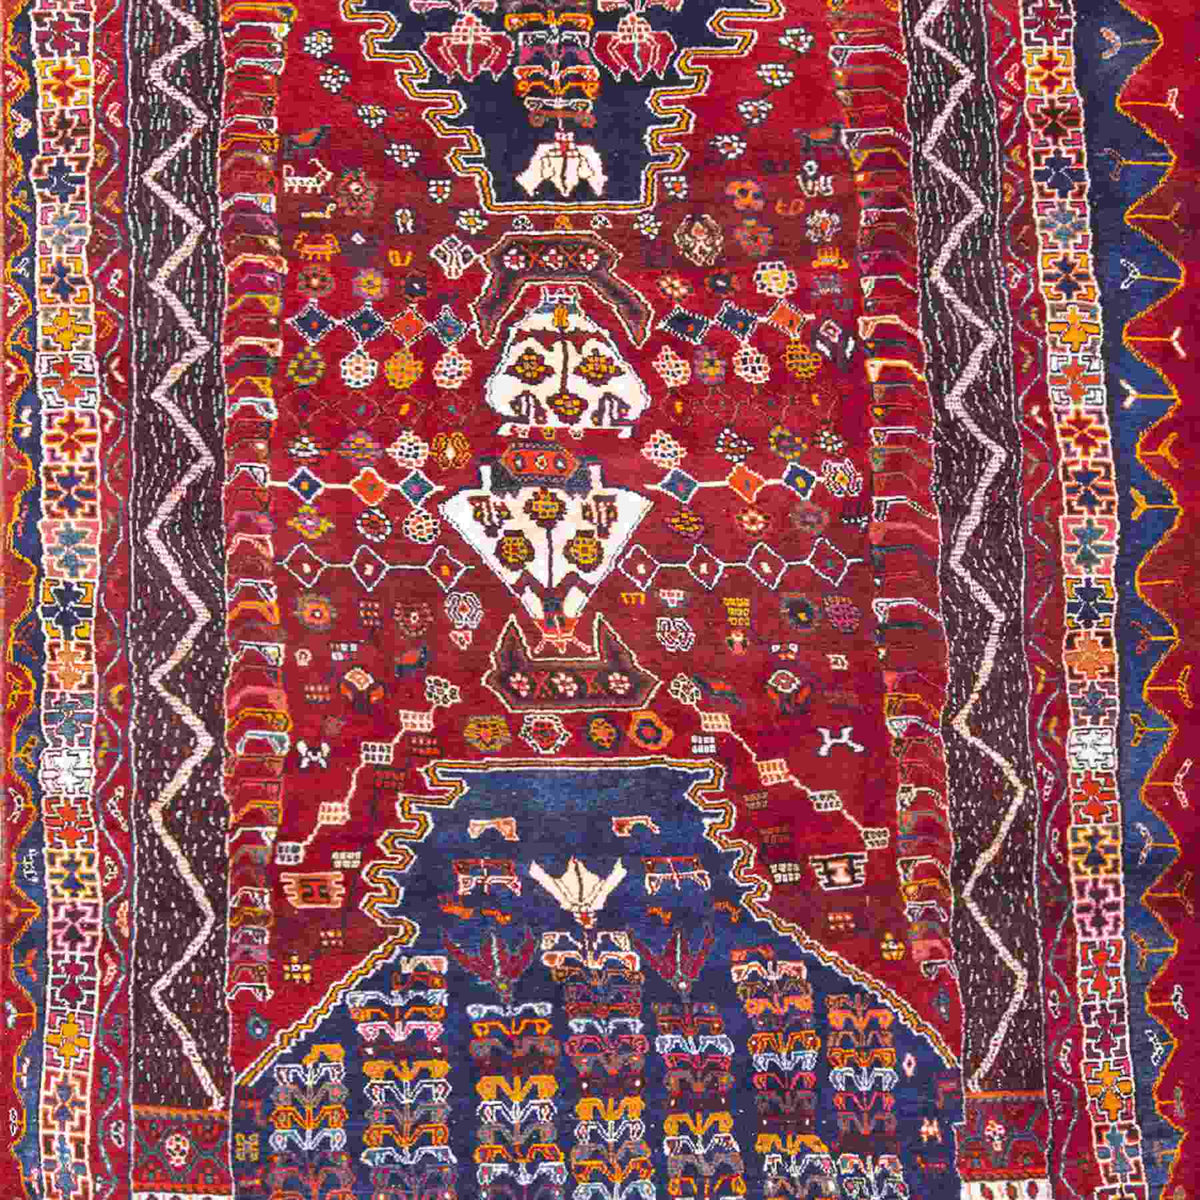 Vintage Persian Rug Pattern